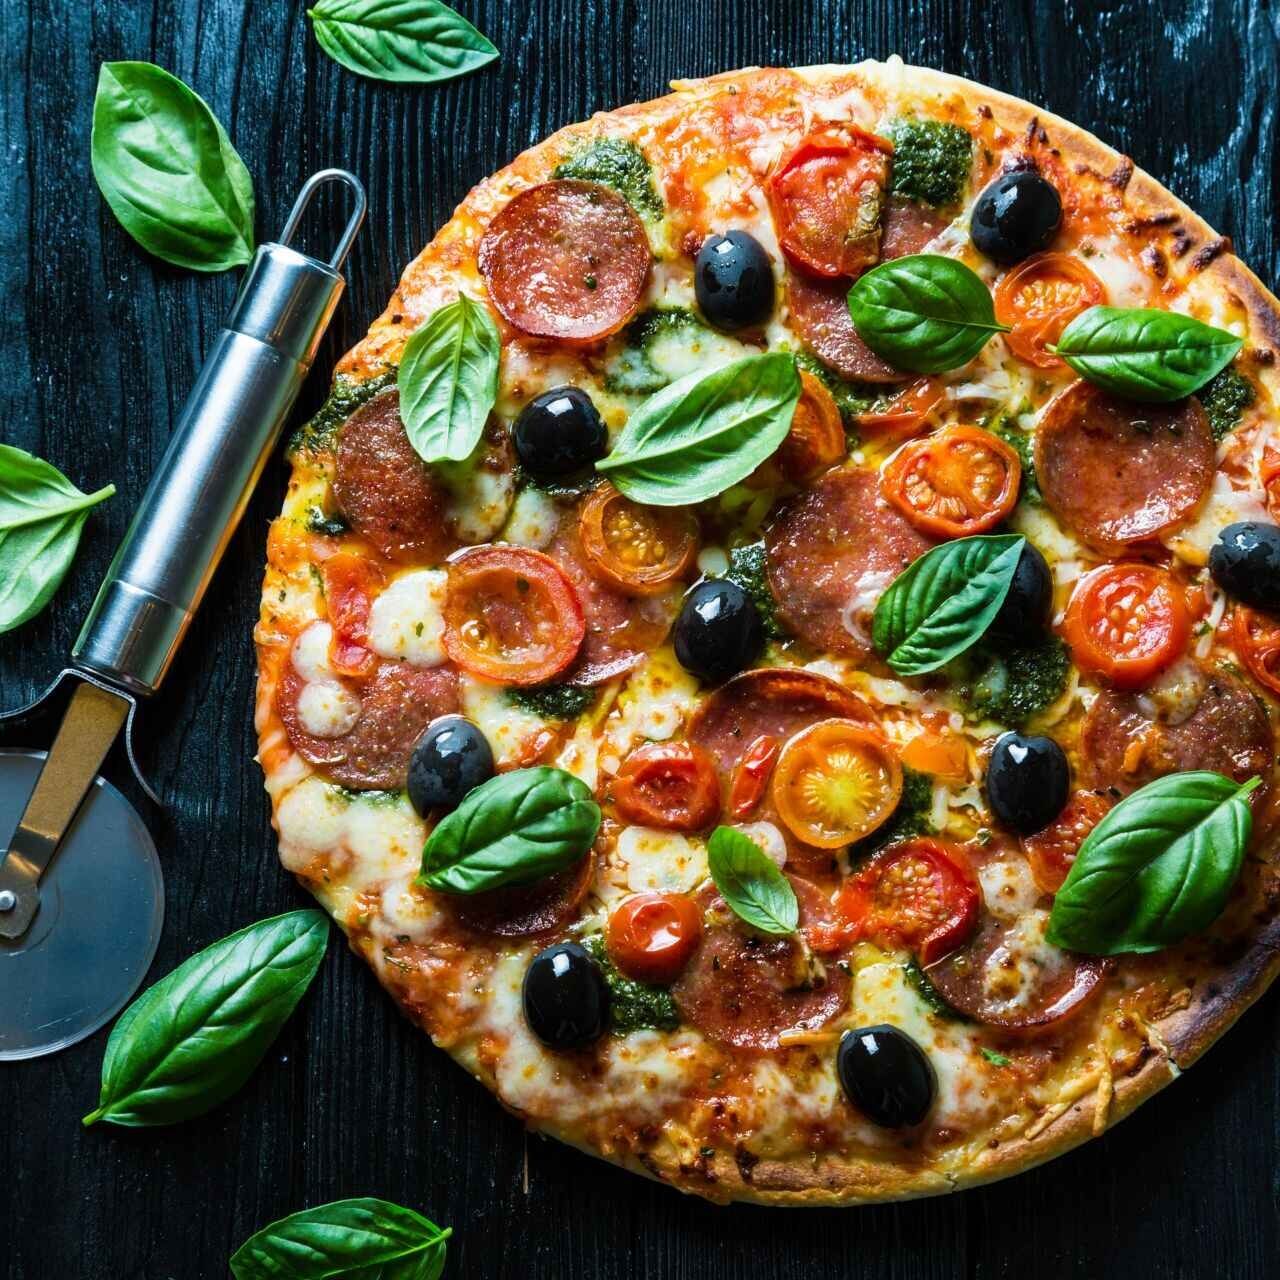 La pizza è riconosciuta come uno dei cibi più salutari ed anti tumorali